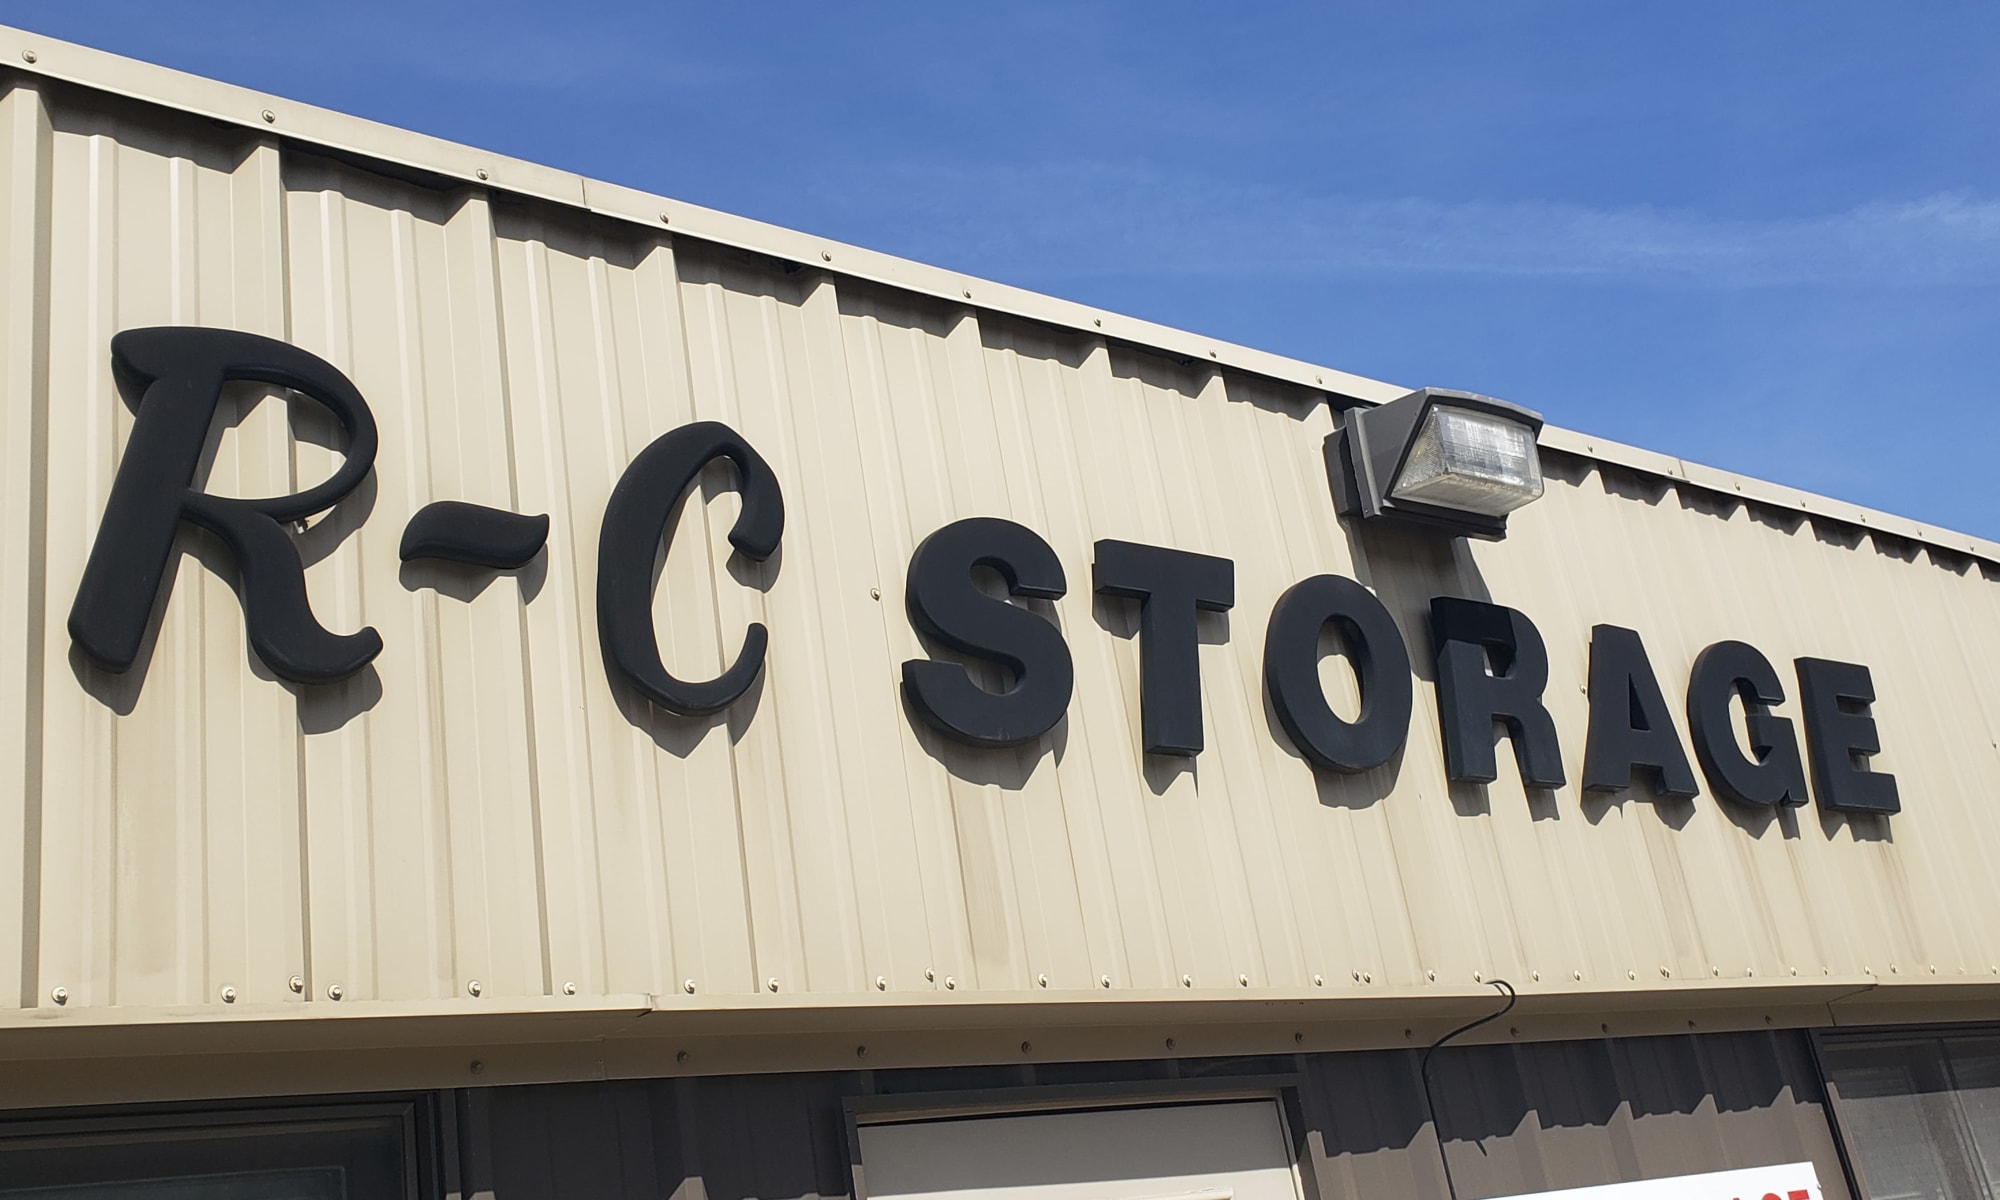 RC Storage in Des Moines, Iowa